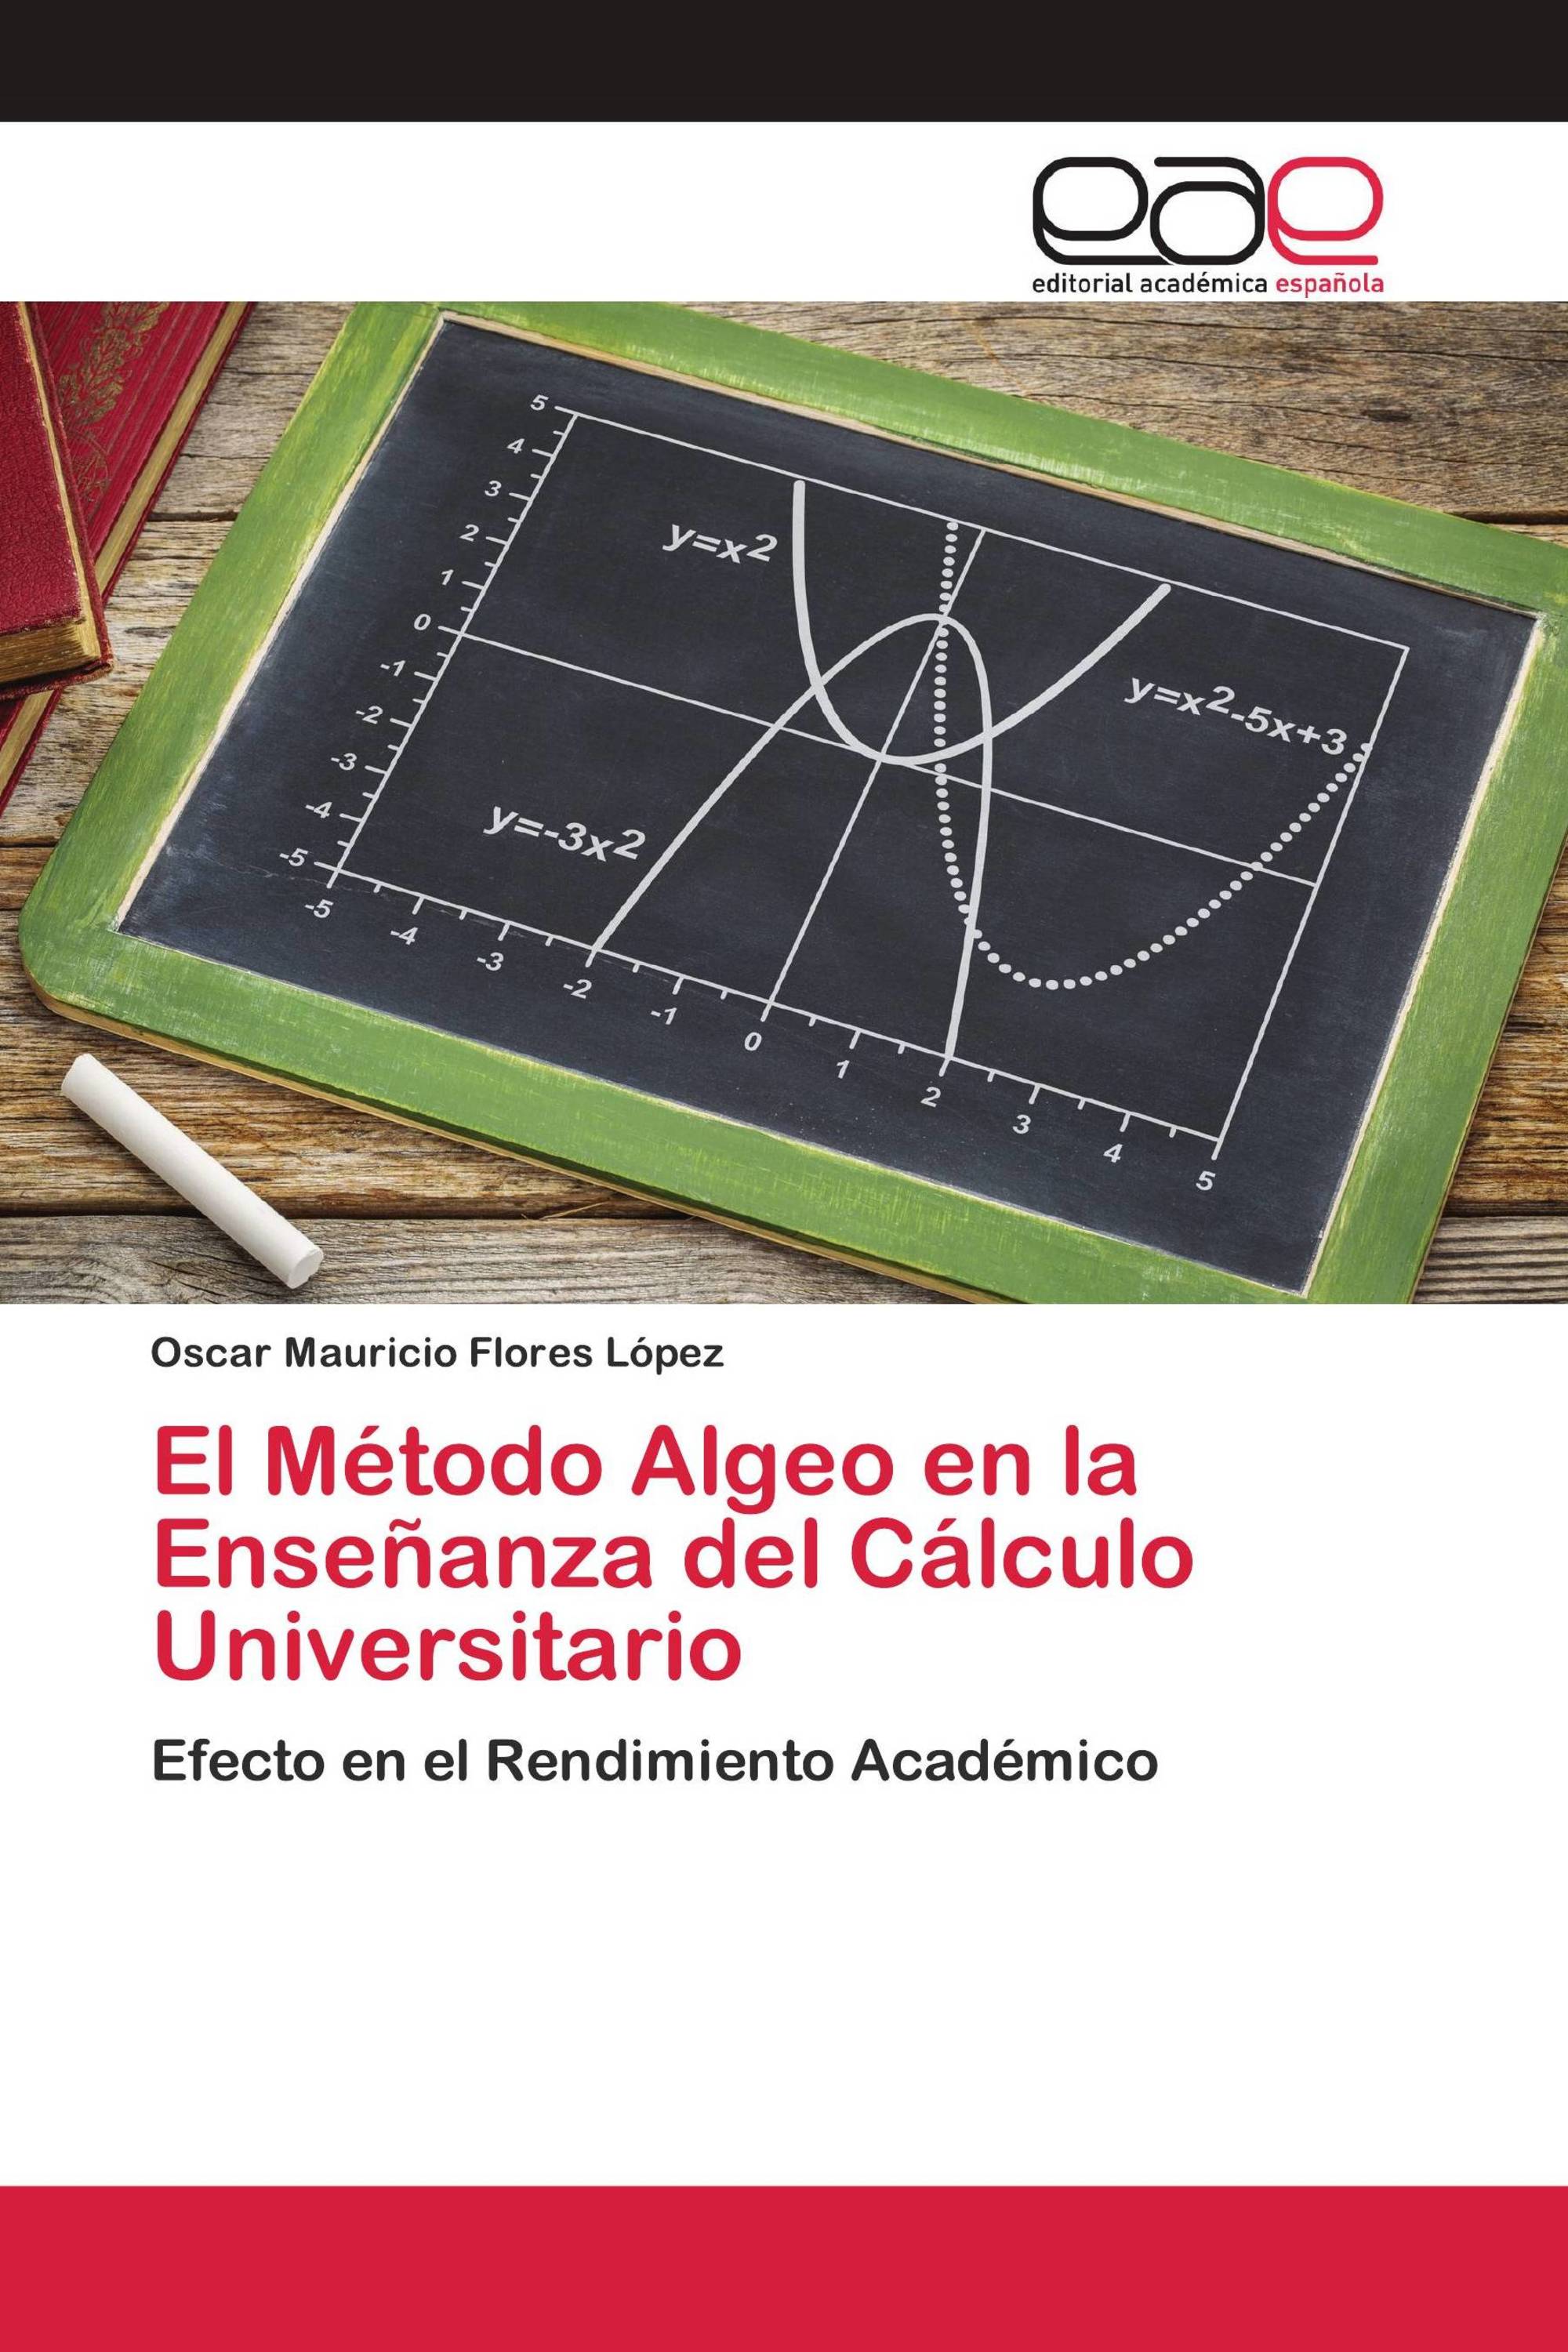 El Método Algeo en la Enseñanza del Cálculo Universitario